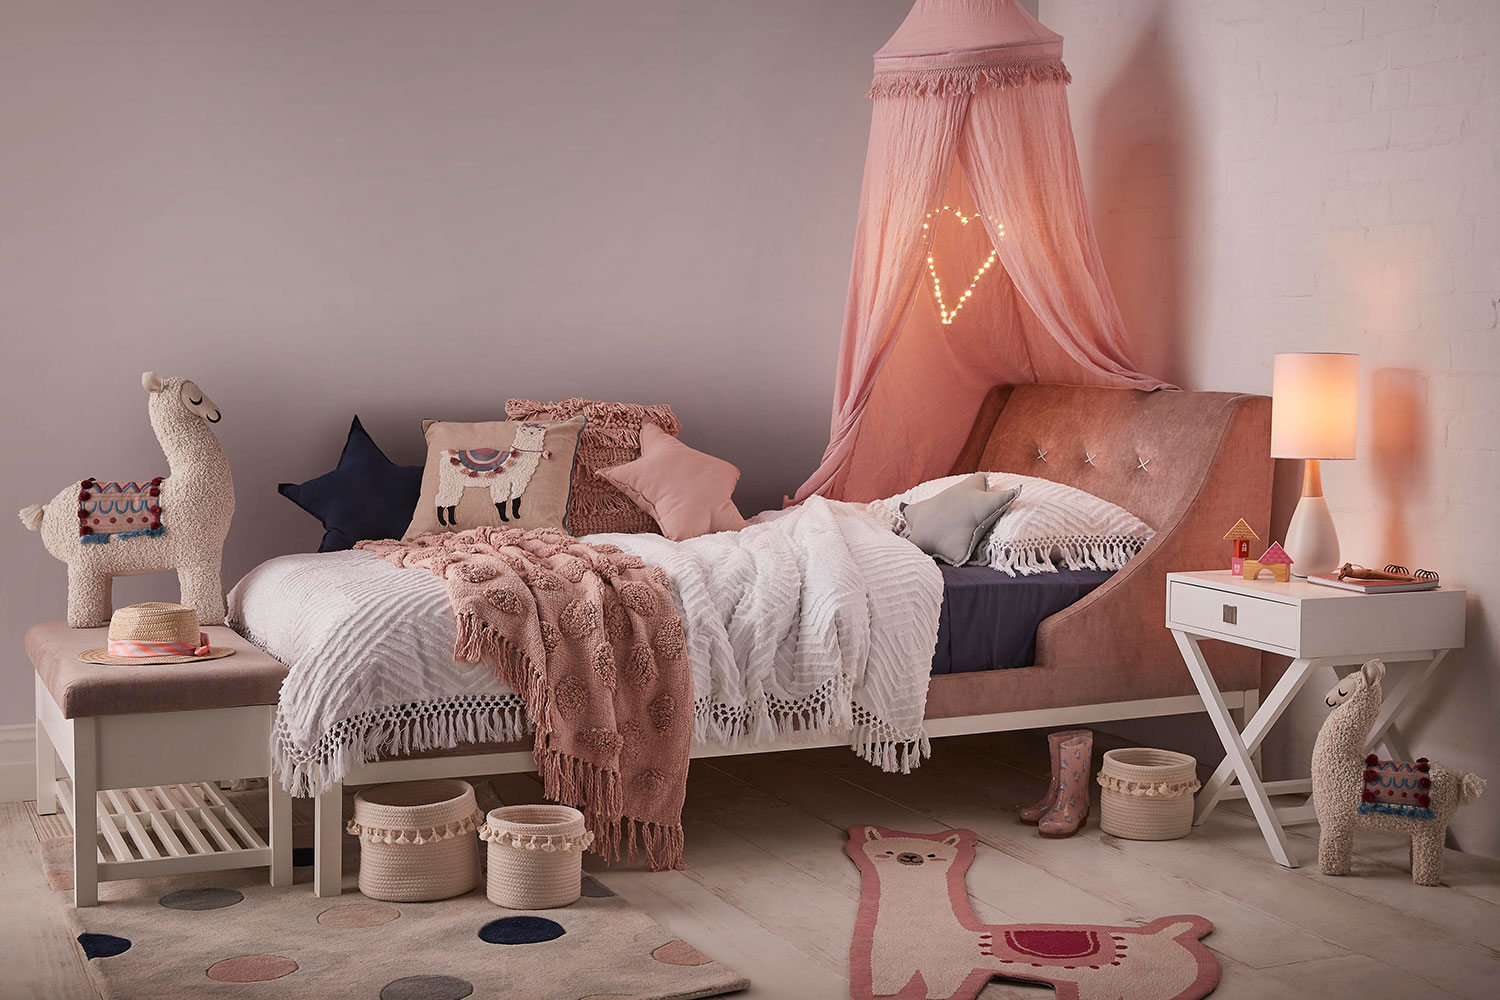 kids bedroom furniture for girls